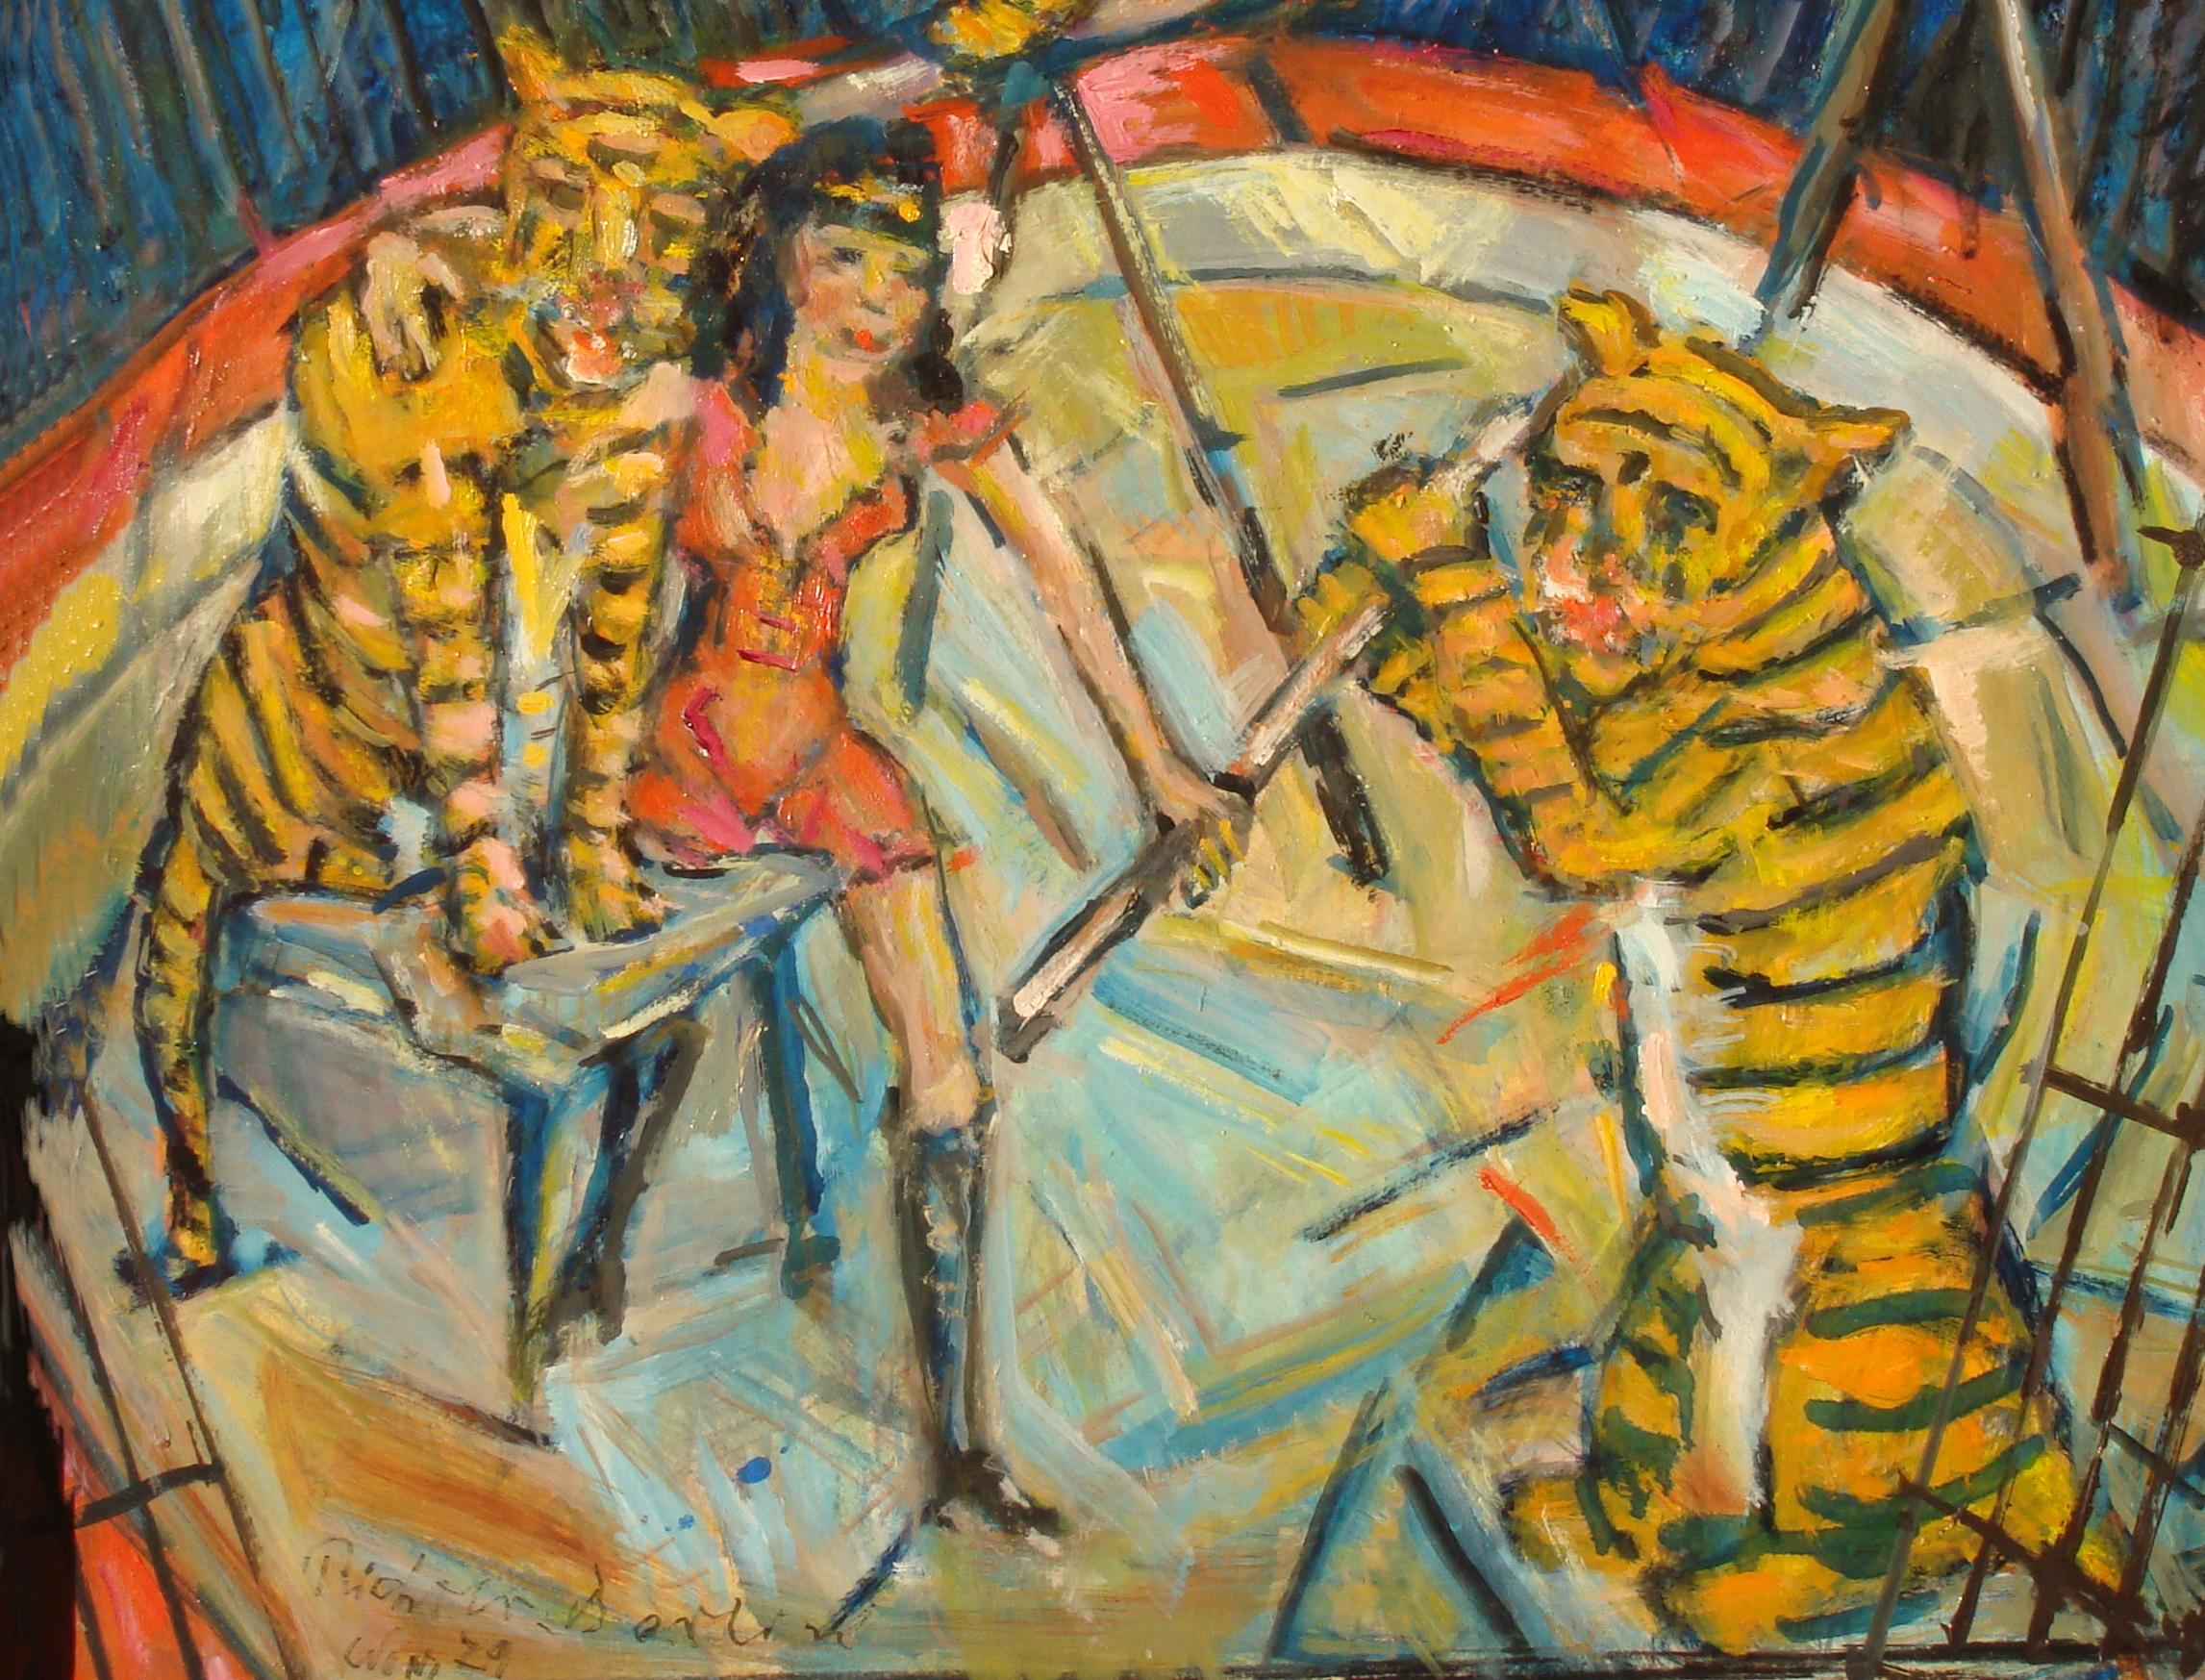 Heinrich Richter-Berlin - Peinture à l'huile - Formation de tigre, 1979 - Expressionniste Painting par Heinrich Richter (b.1884)